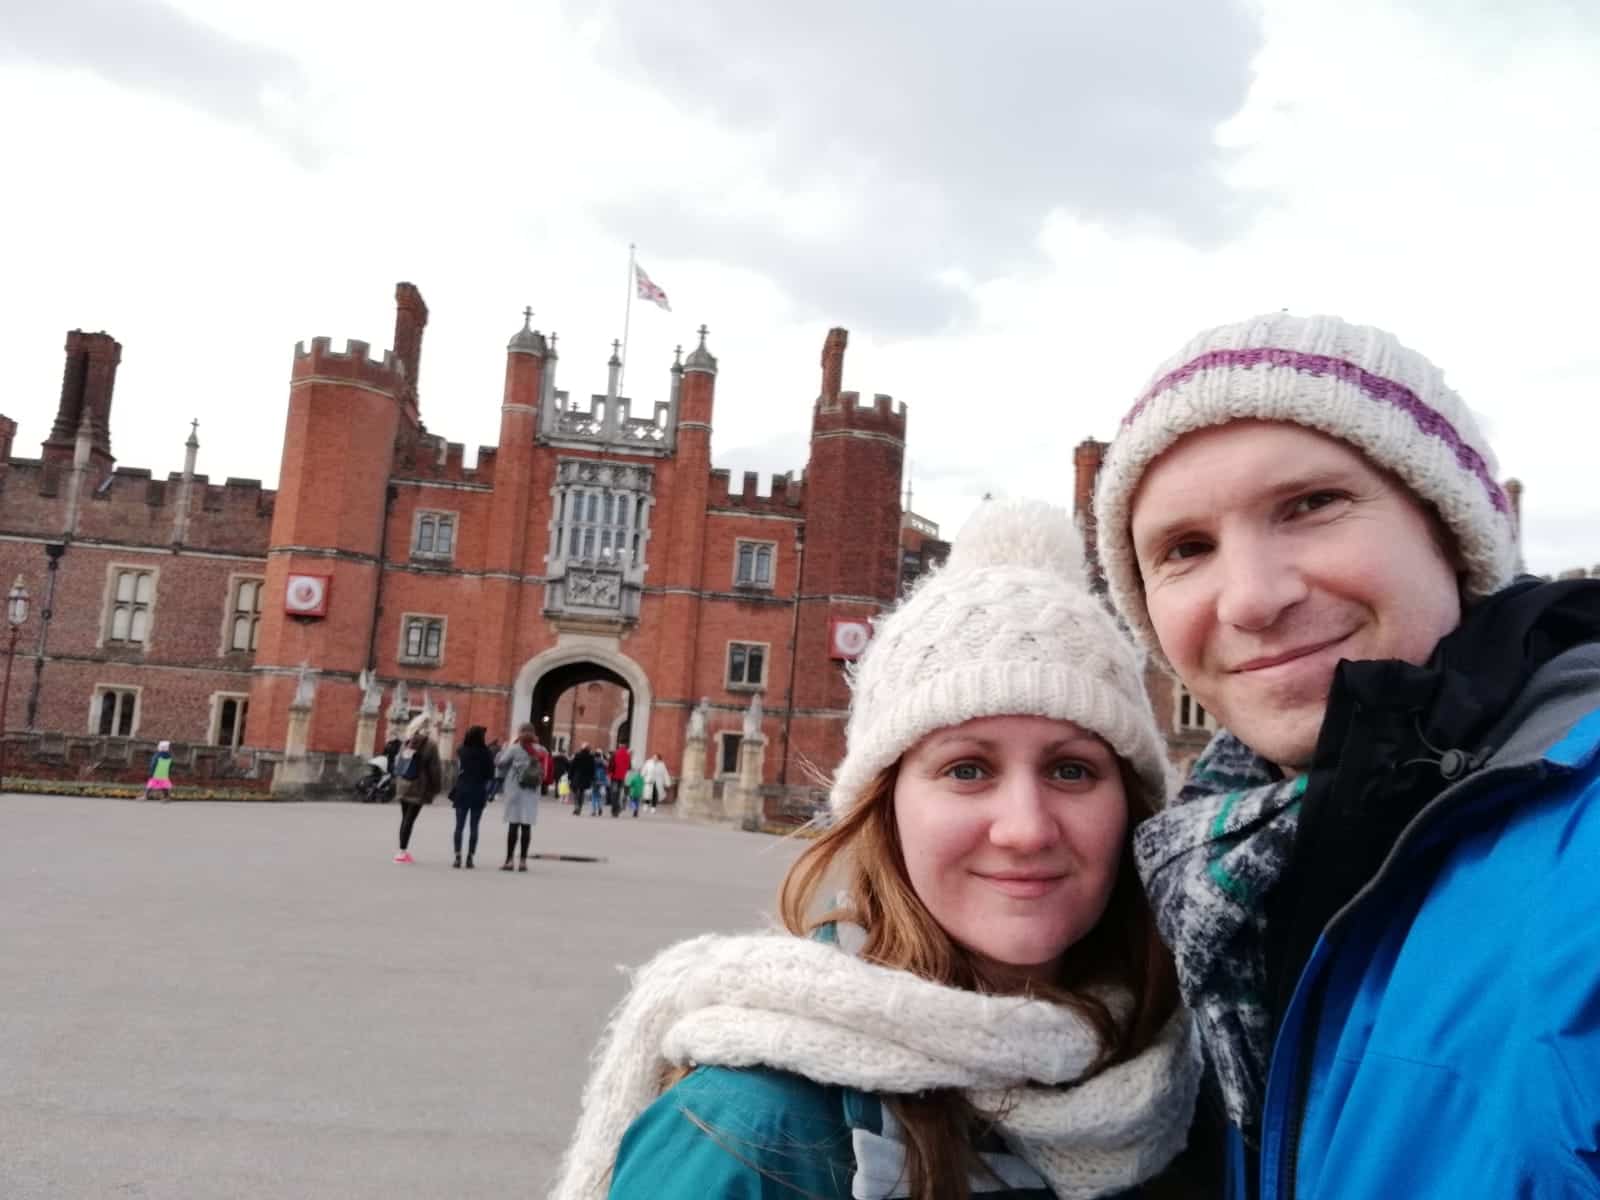 Us outside Hampton Court Palace